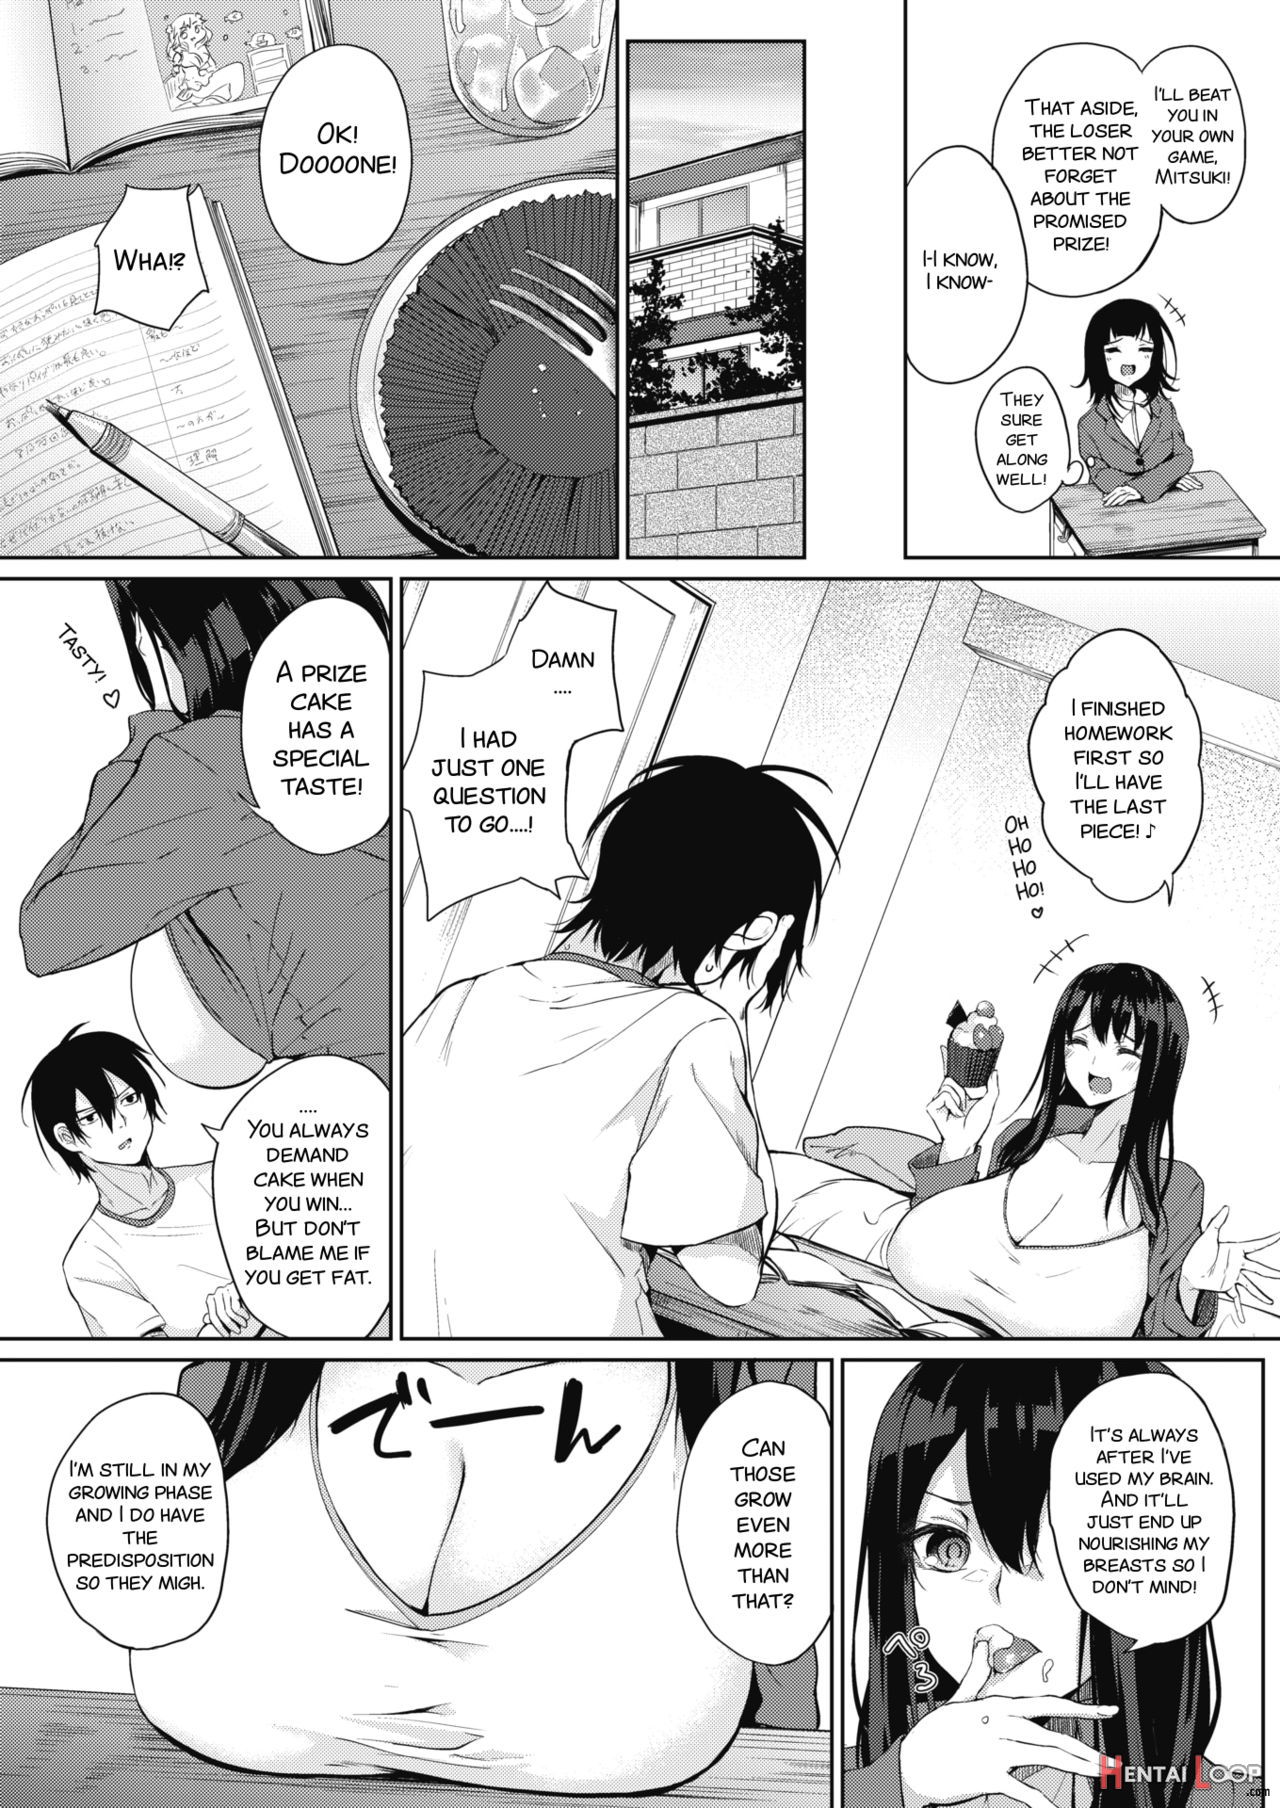 Hyaku Kazoe Owaru Made page 3